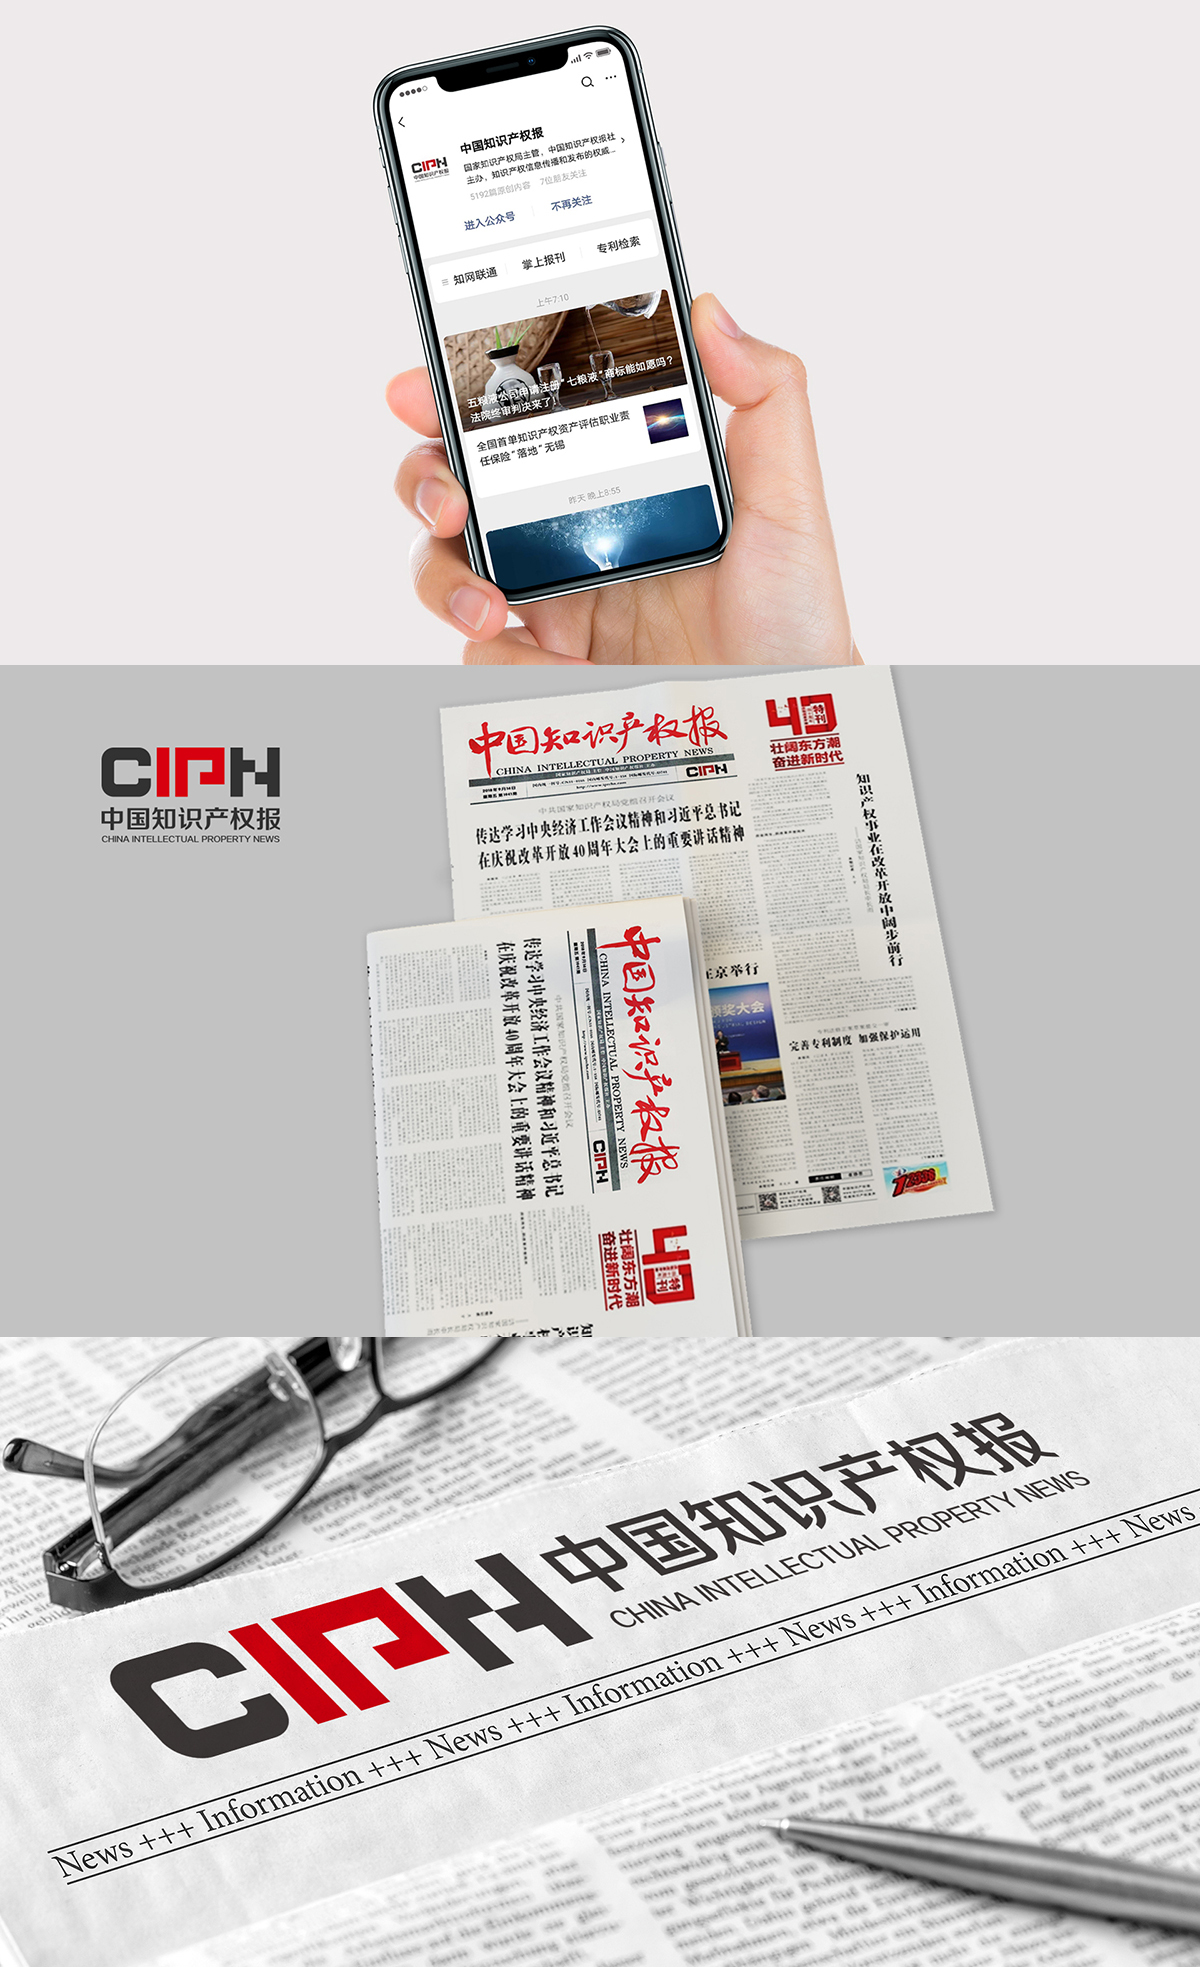 中国知识产权报(新媒体)品牌形象设计图3